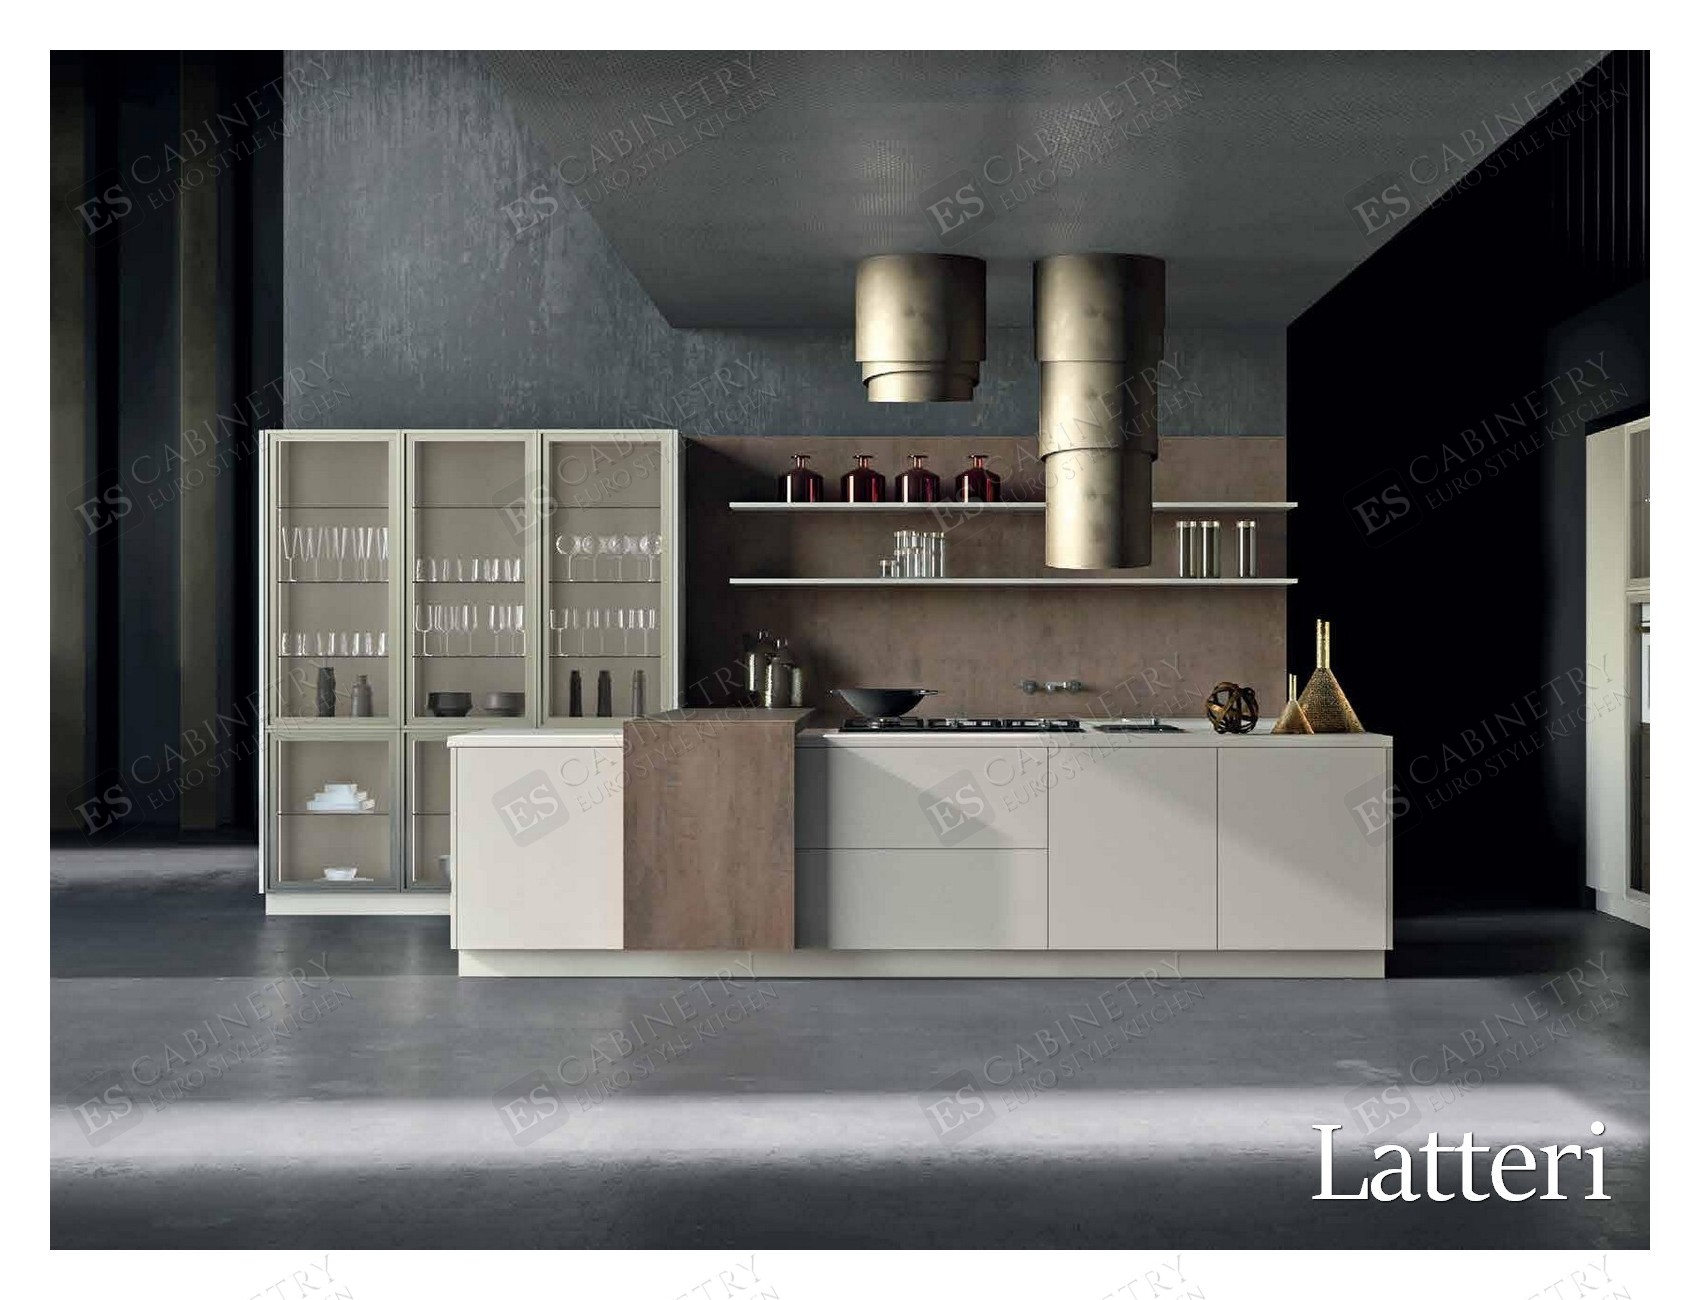 Latteri | Italian kitchen designs